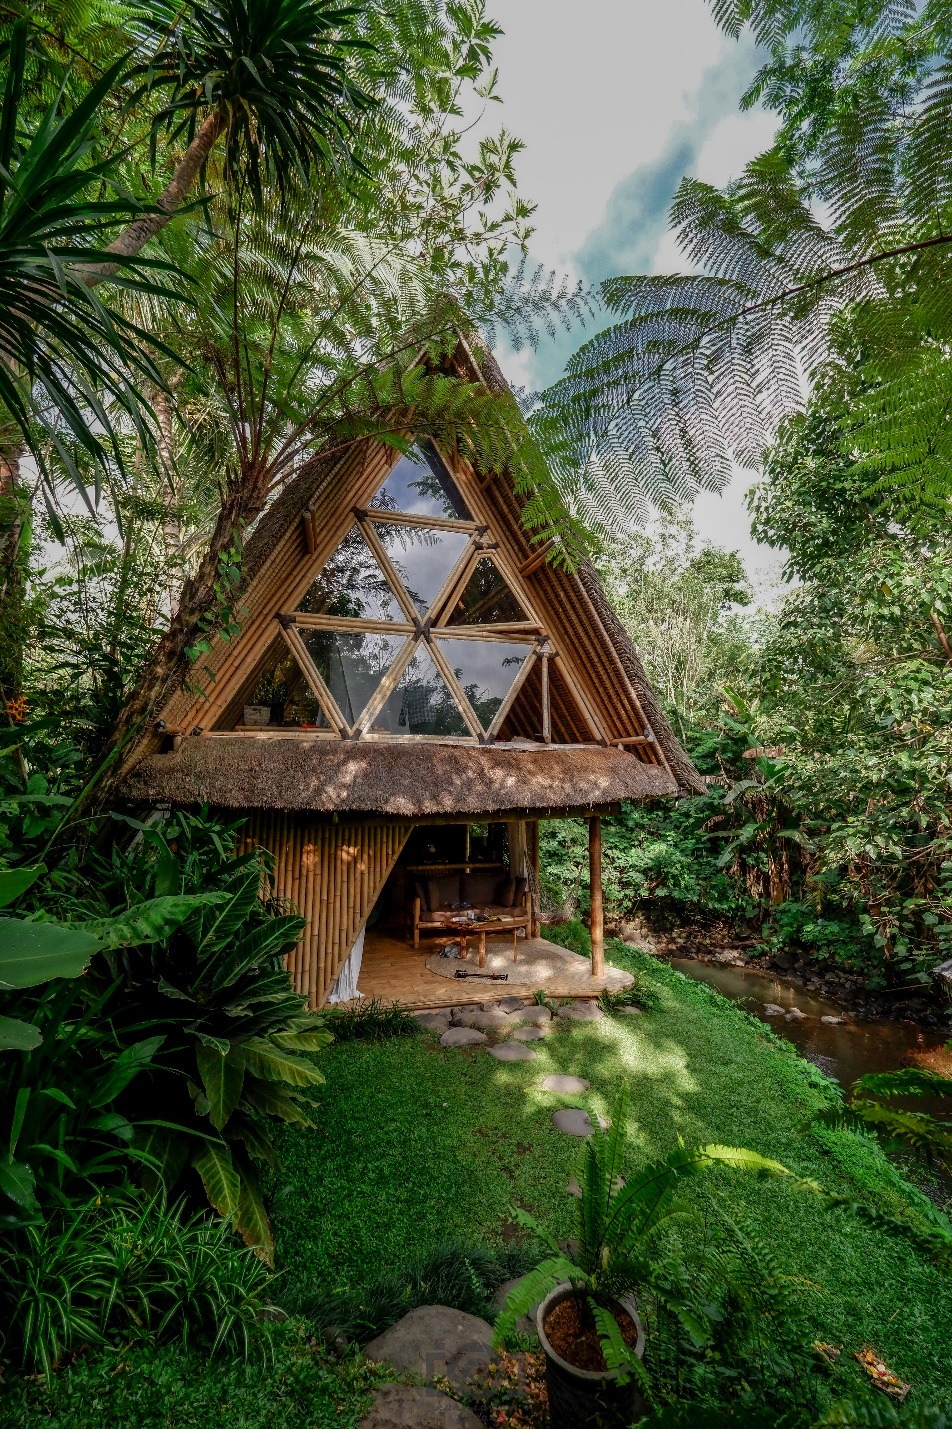 Tìm bình yên trong ngôi nhà tre ẩn mình giữa núi rừng Bali - 1